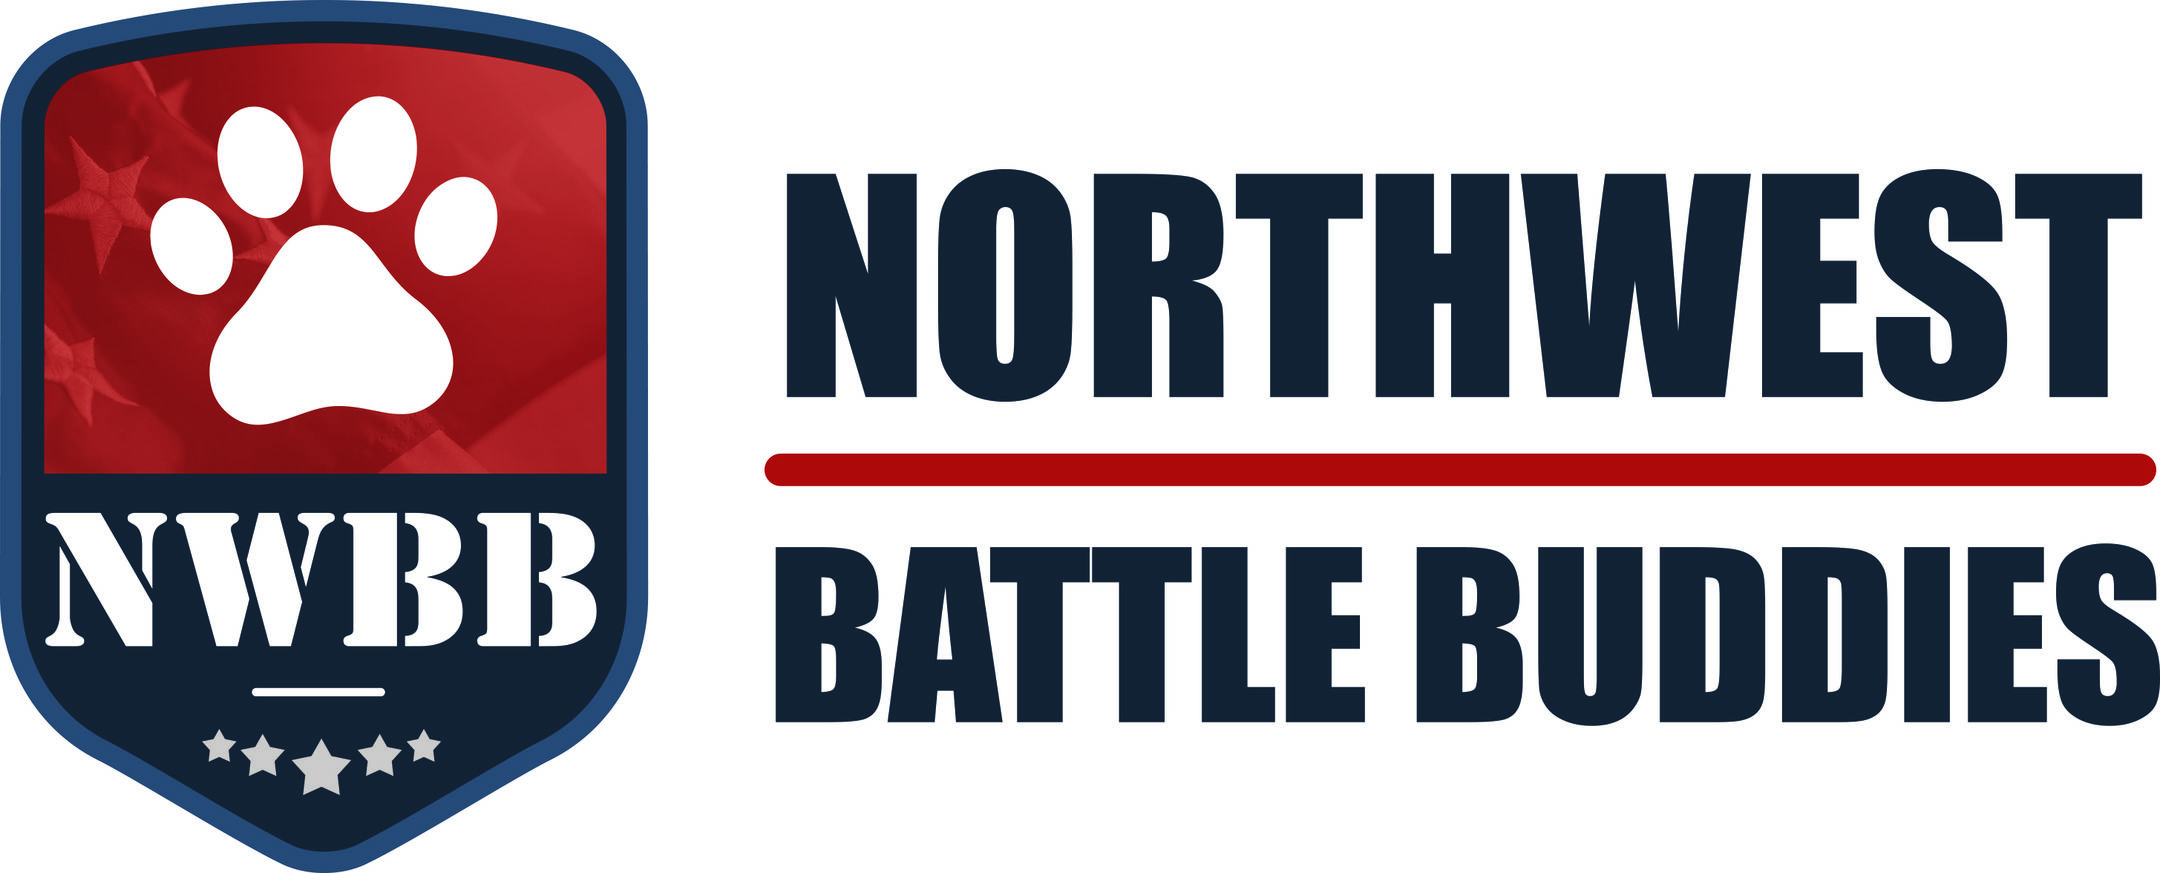 nwbb-badge-logo-flag